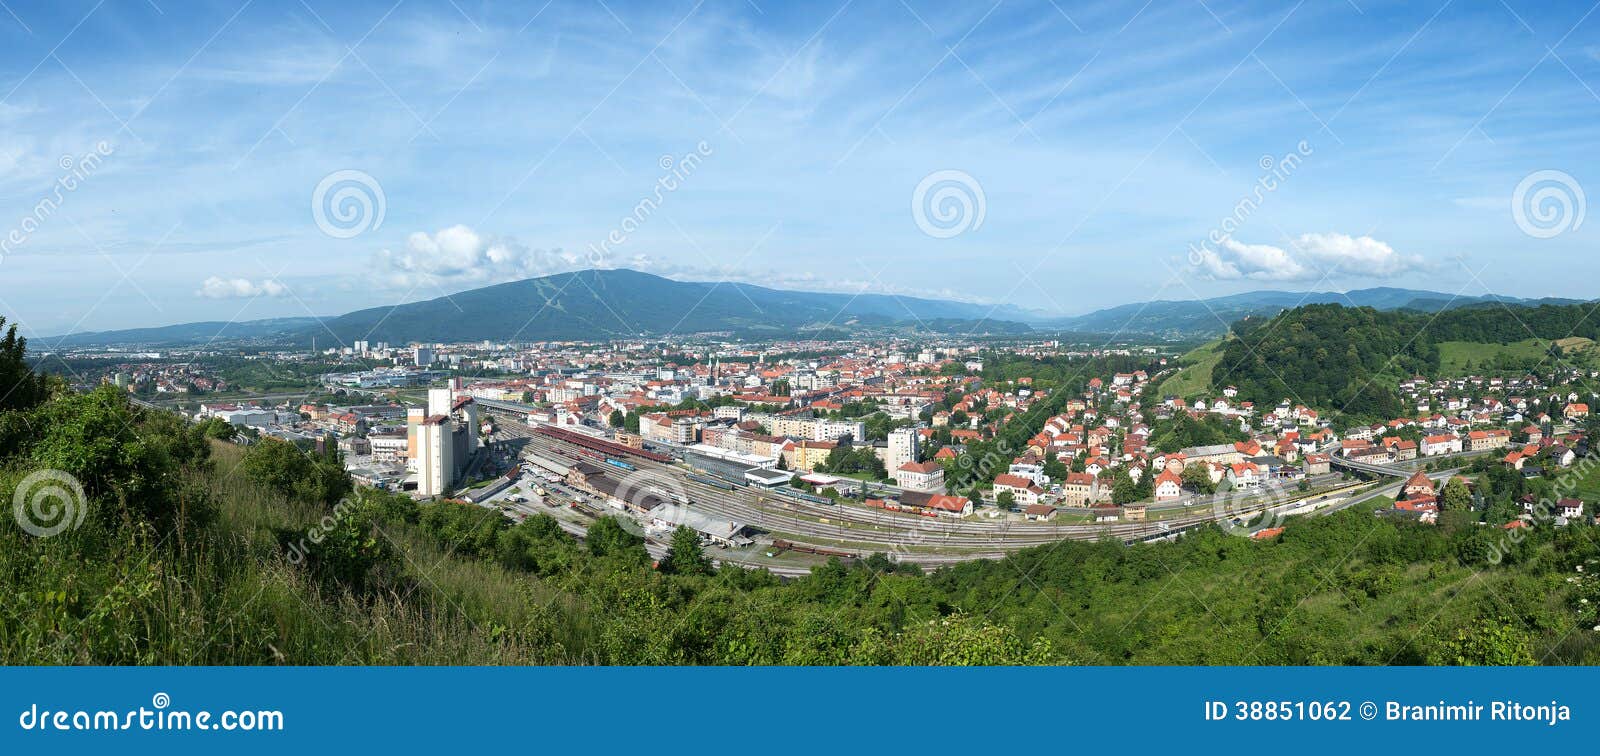 maribor, sloveinja